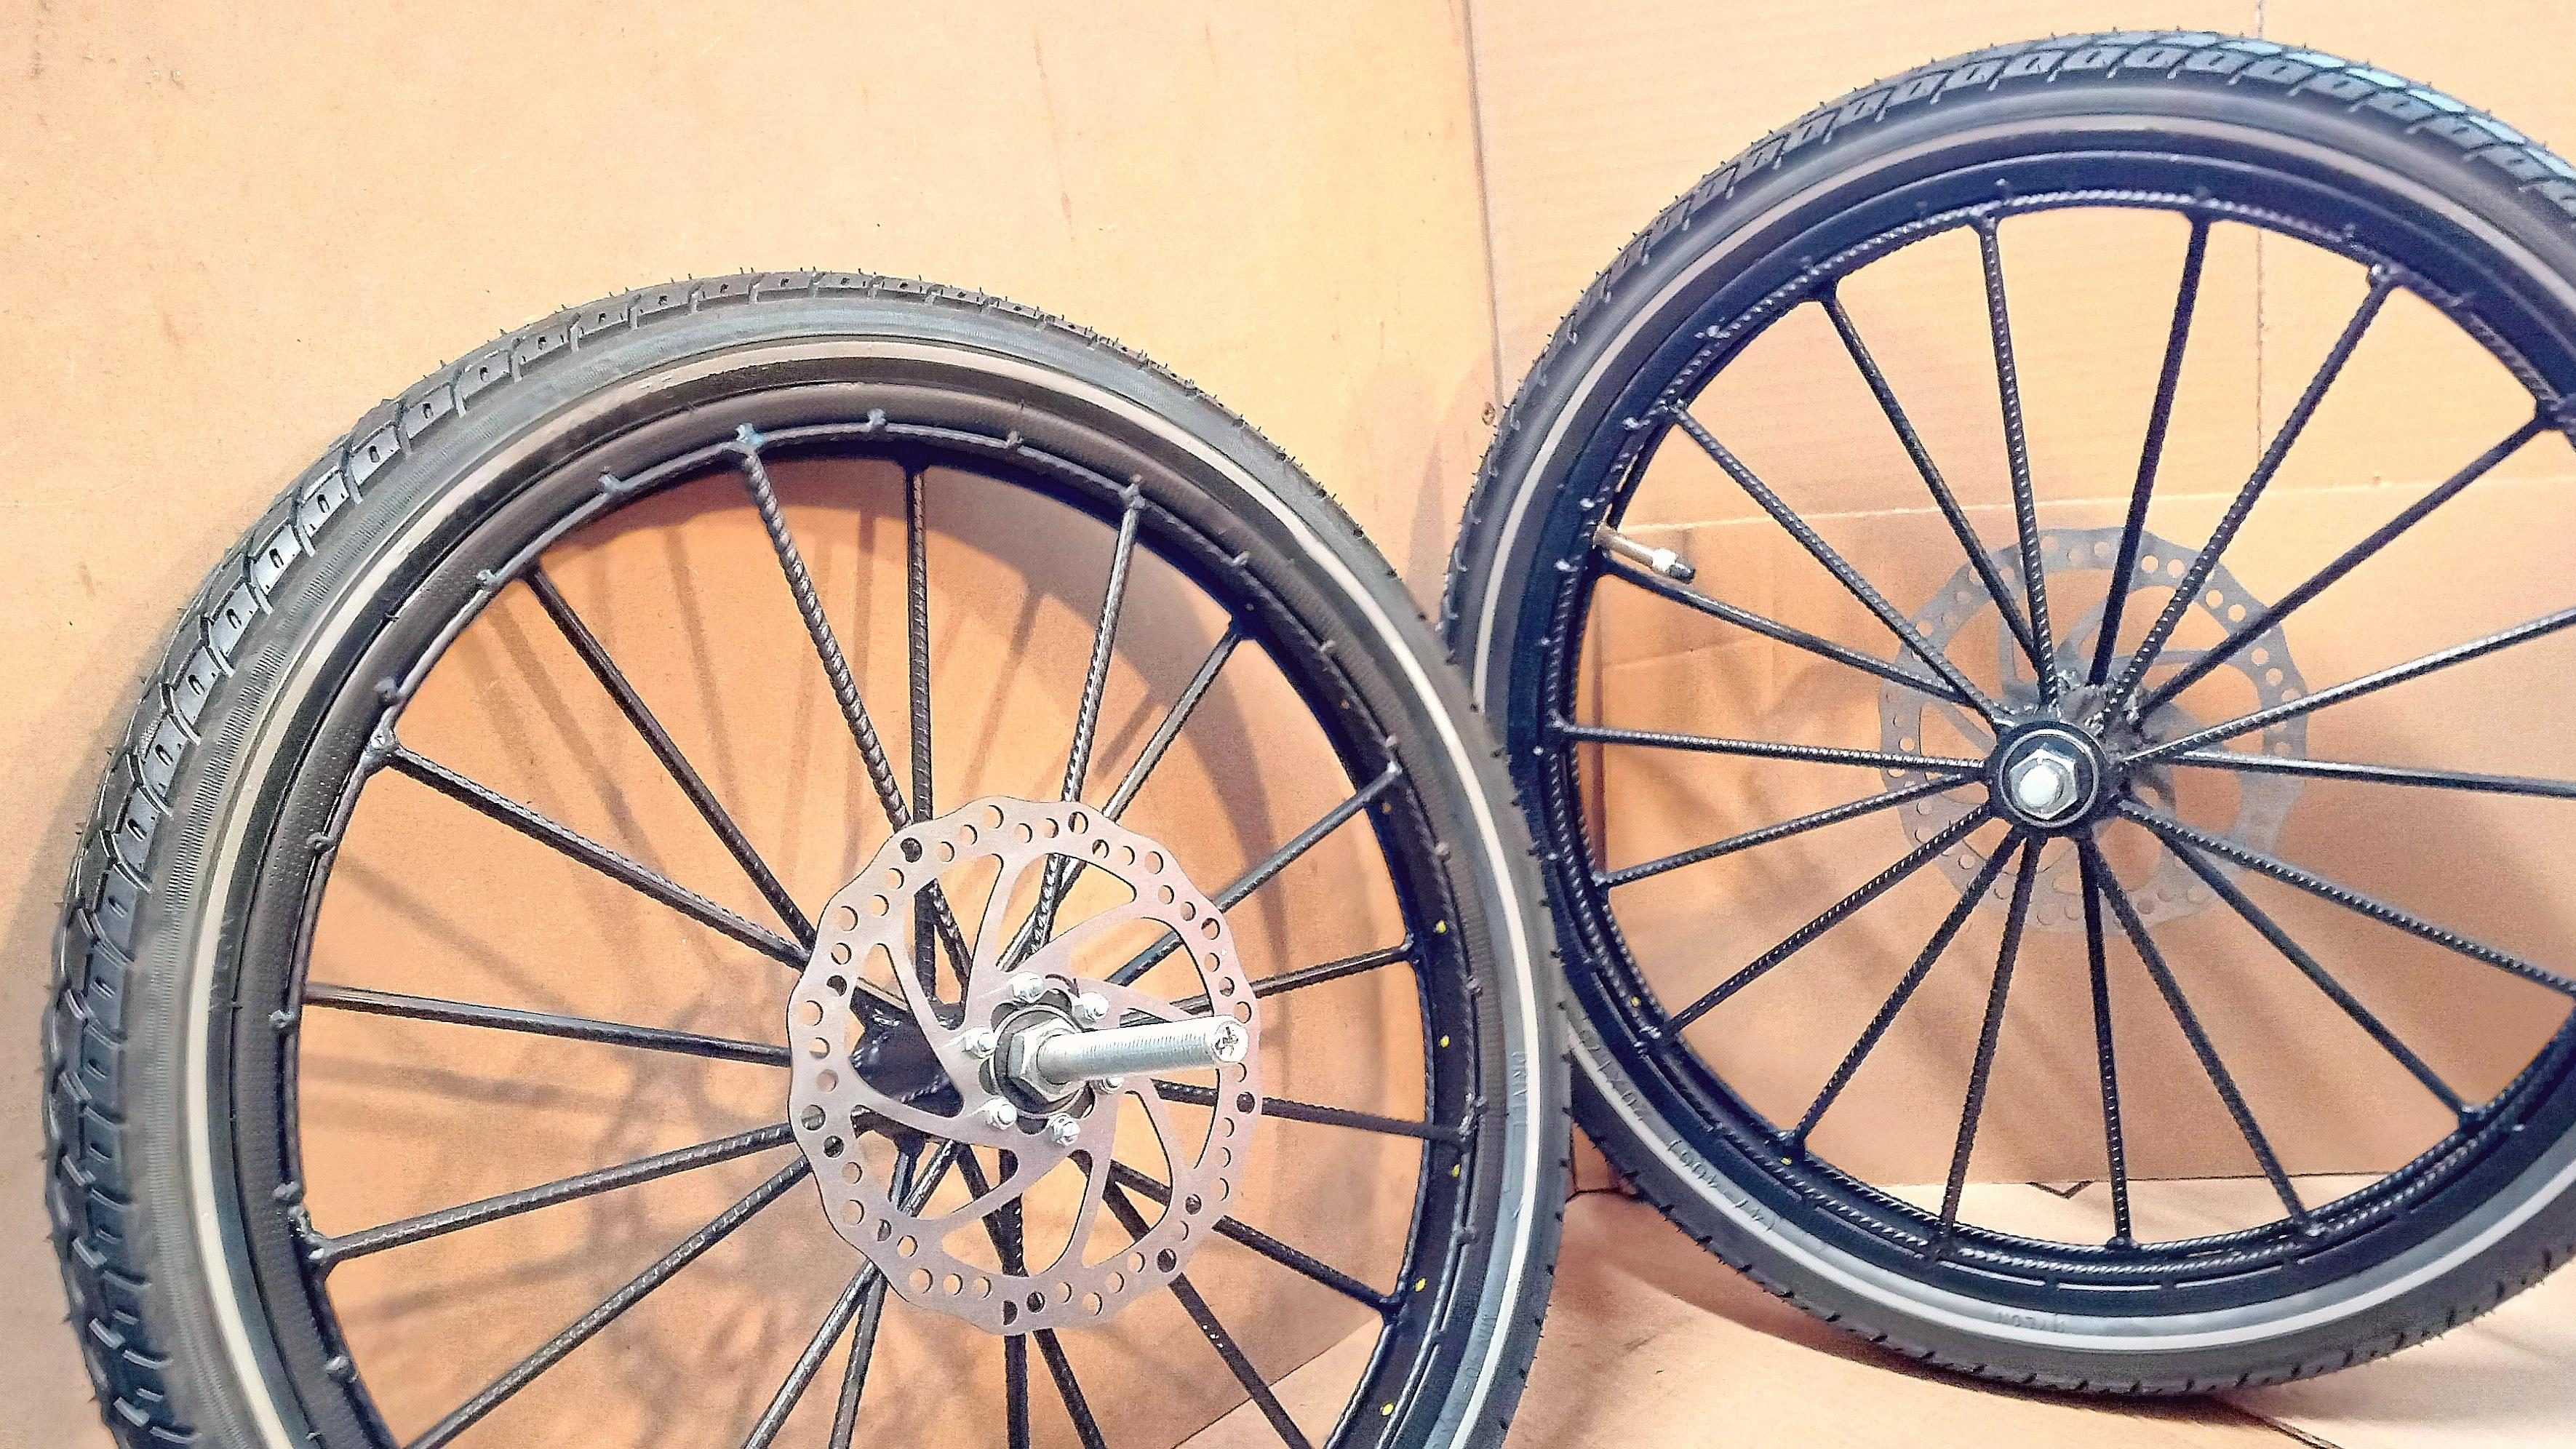 DIY bicycle wheels welded with rebar